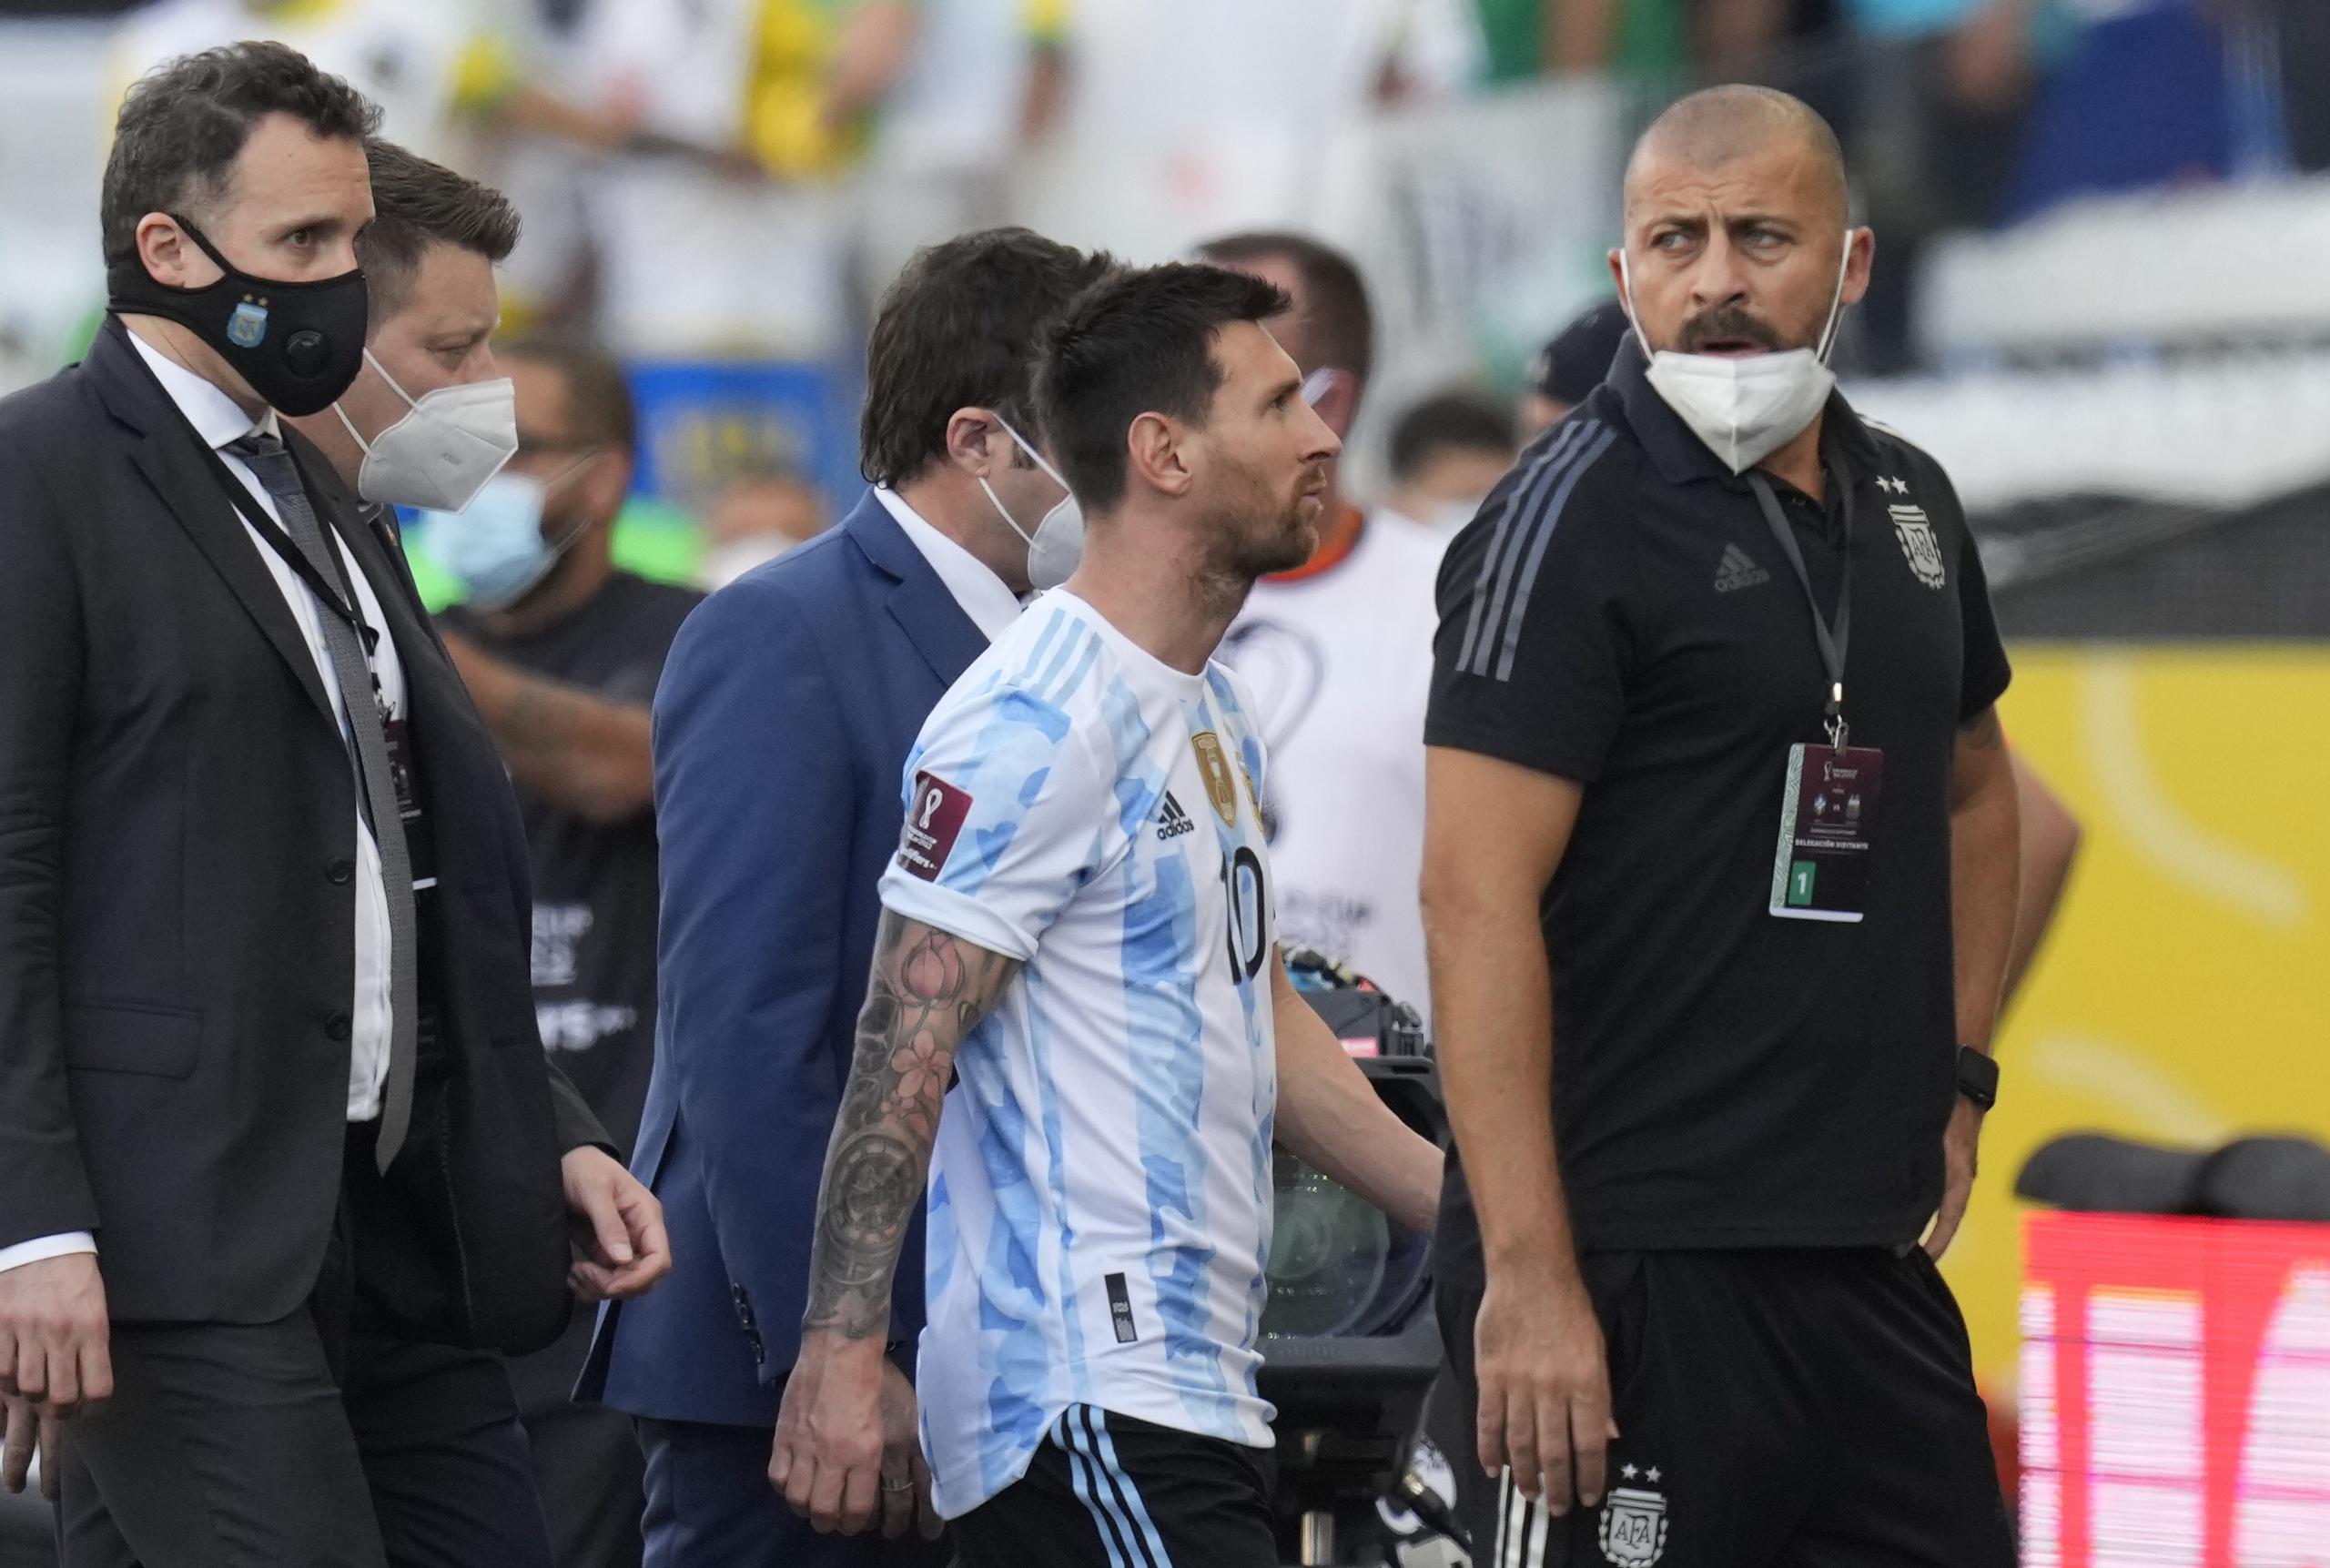 Lionel Messi es escoltado a las gradas junto al resto del equipo luego del sorpresivo movimiento policiaco enfocado en deportar a cuatro jugadores de Argentina que no declararon correctamente de dónde venían cuando hicieron ingreso al país.